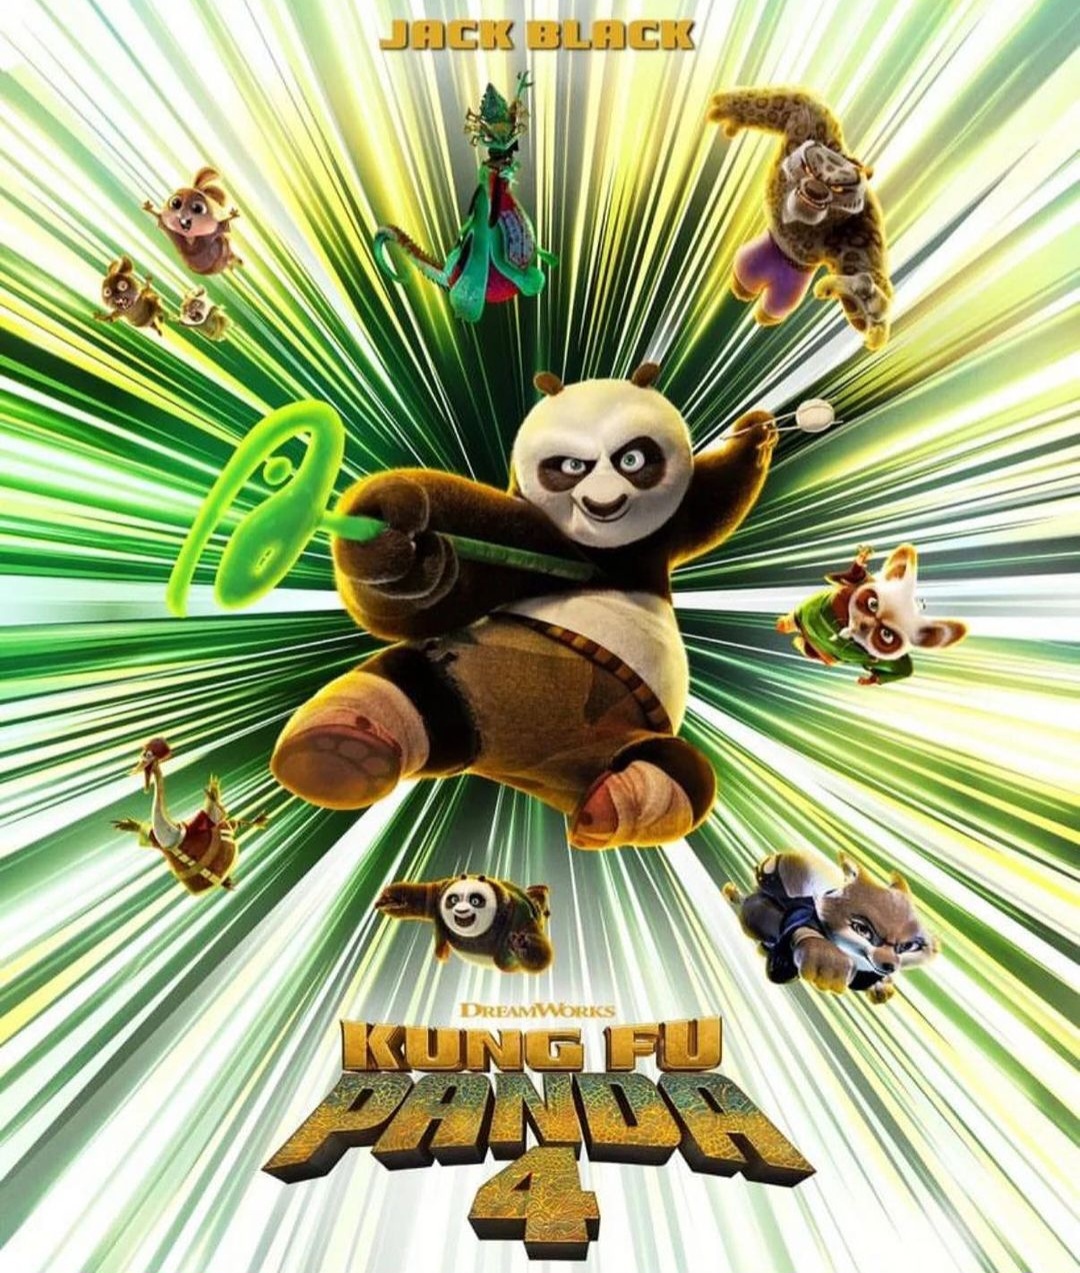 Terbaru! Film Kung Fu Panda 4 Tayang di Bioskop Hari Ini, Begini Sinopsisnya